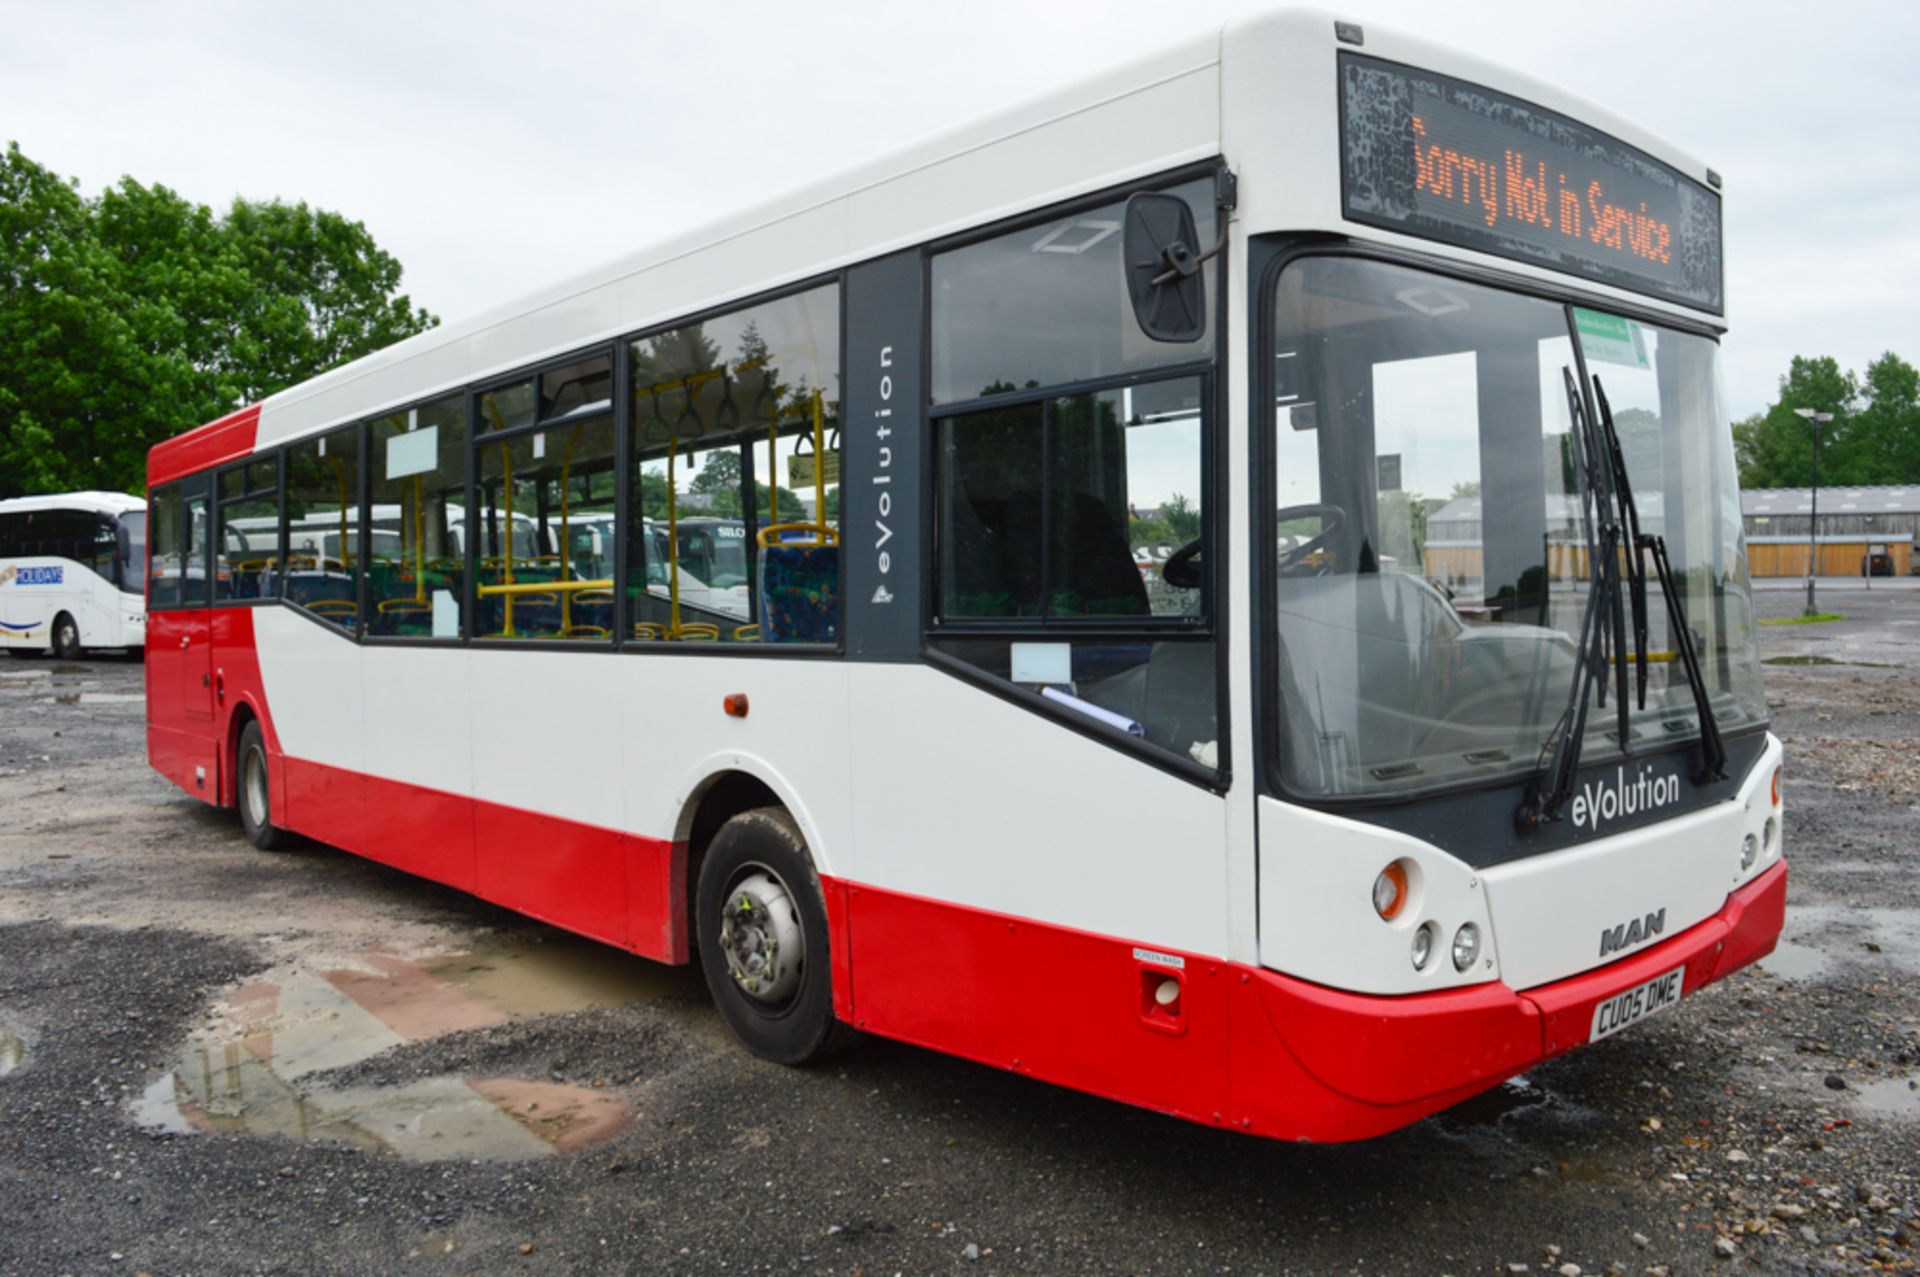 MAN MCV Evolution F2000 40 seat service bus Registration Number: CU05 DME Date of registration: 01/ - Image 2 of 10